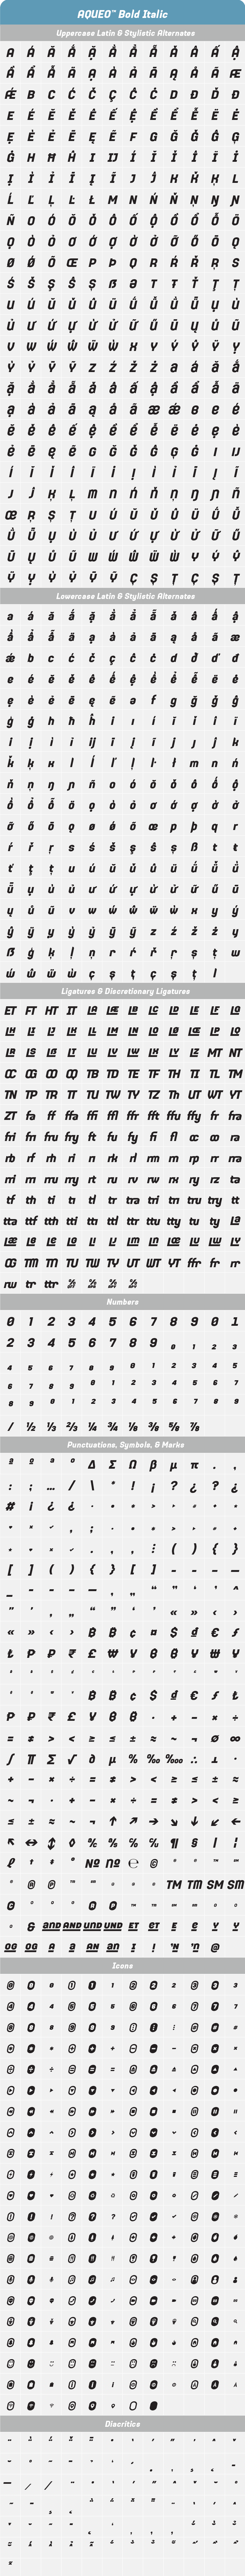 Aqueo-Bold-Italic-Glyph-Tables.png